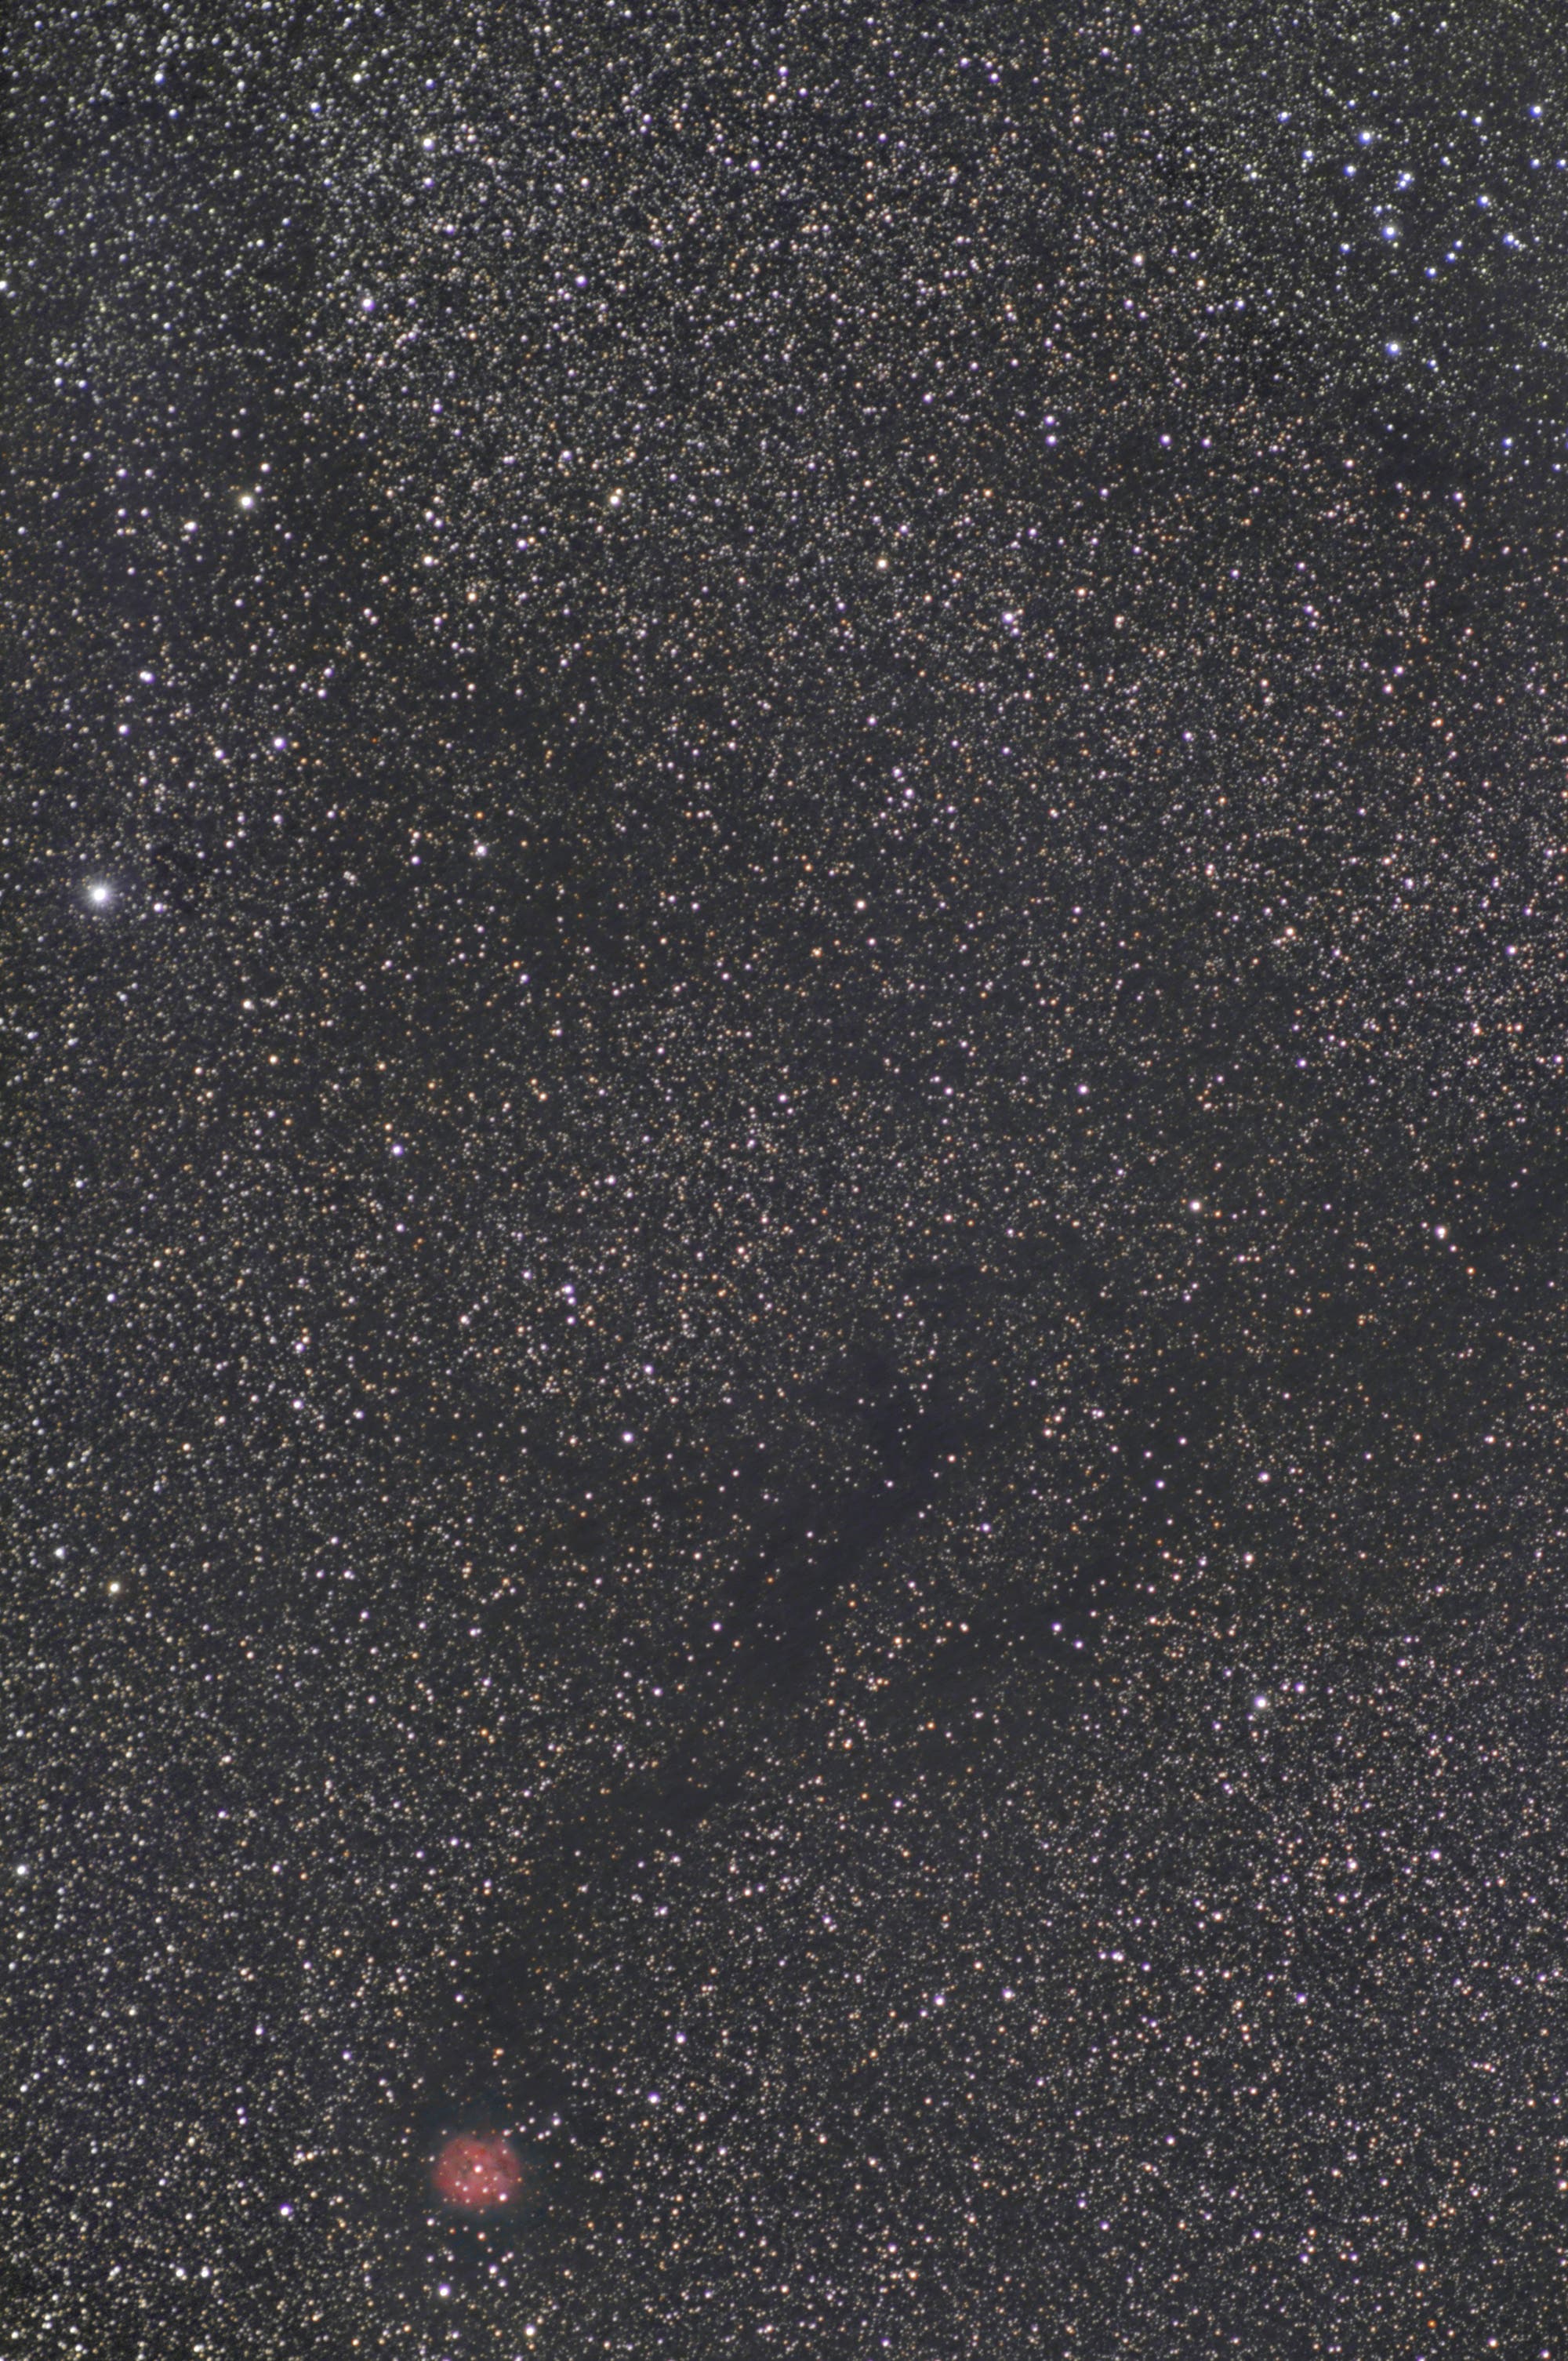 Kokon-Nebel und Messier 39 im weiten Feld